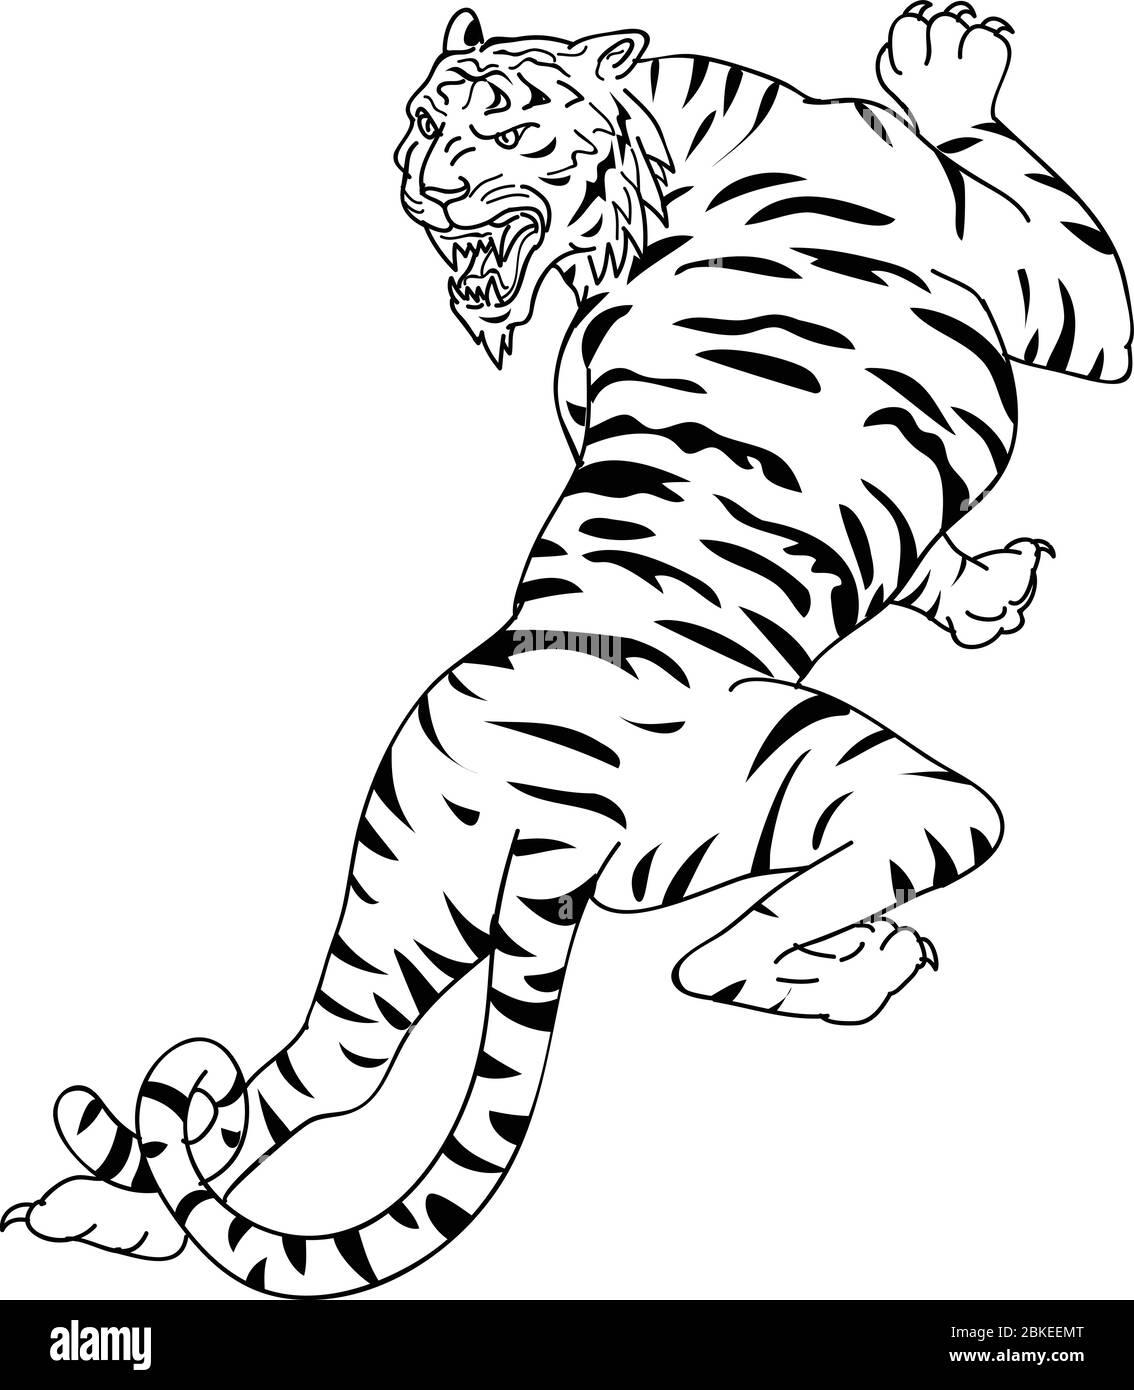 Tiger Drawing Images - Free Download on Freepik